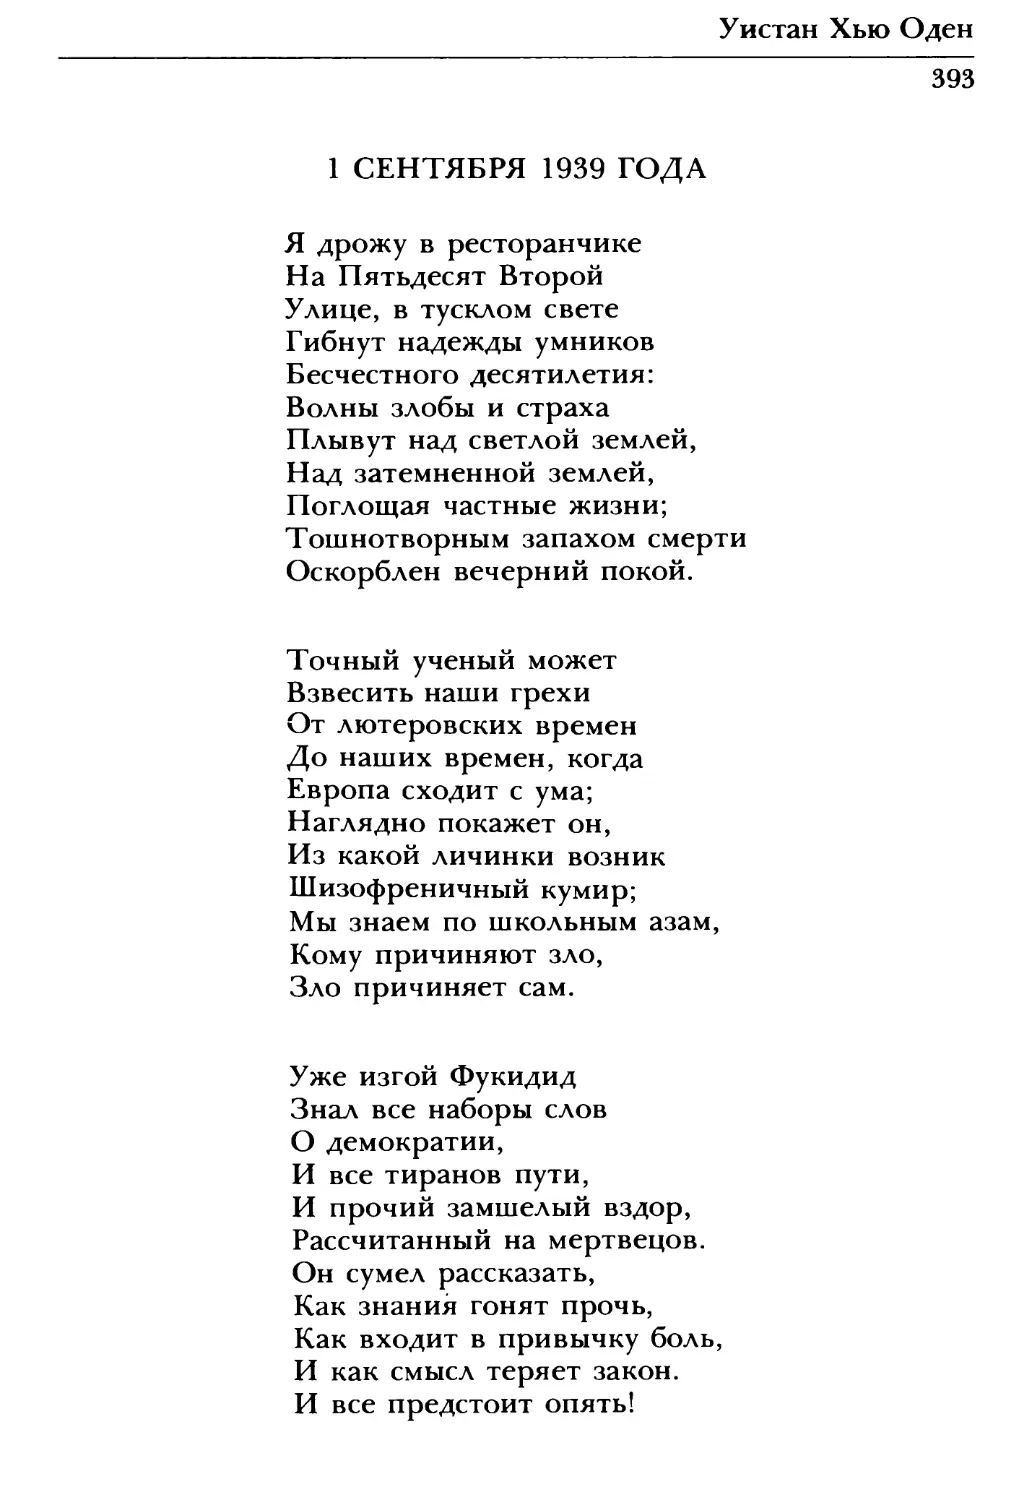 1 сентября 1939 года. Перевод А. Сергеева